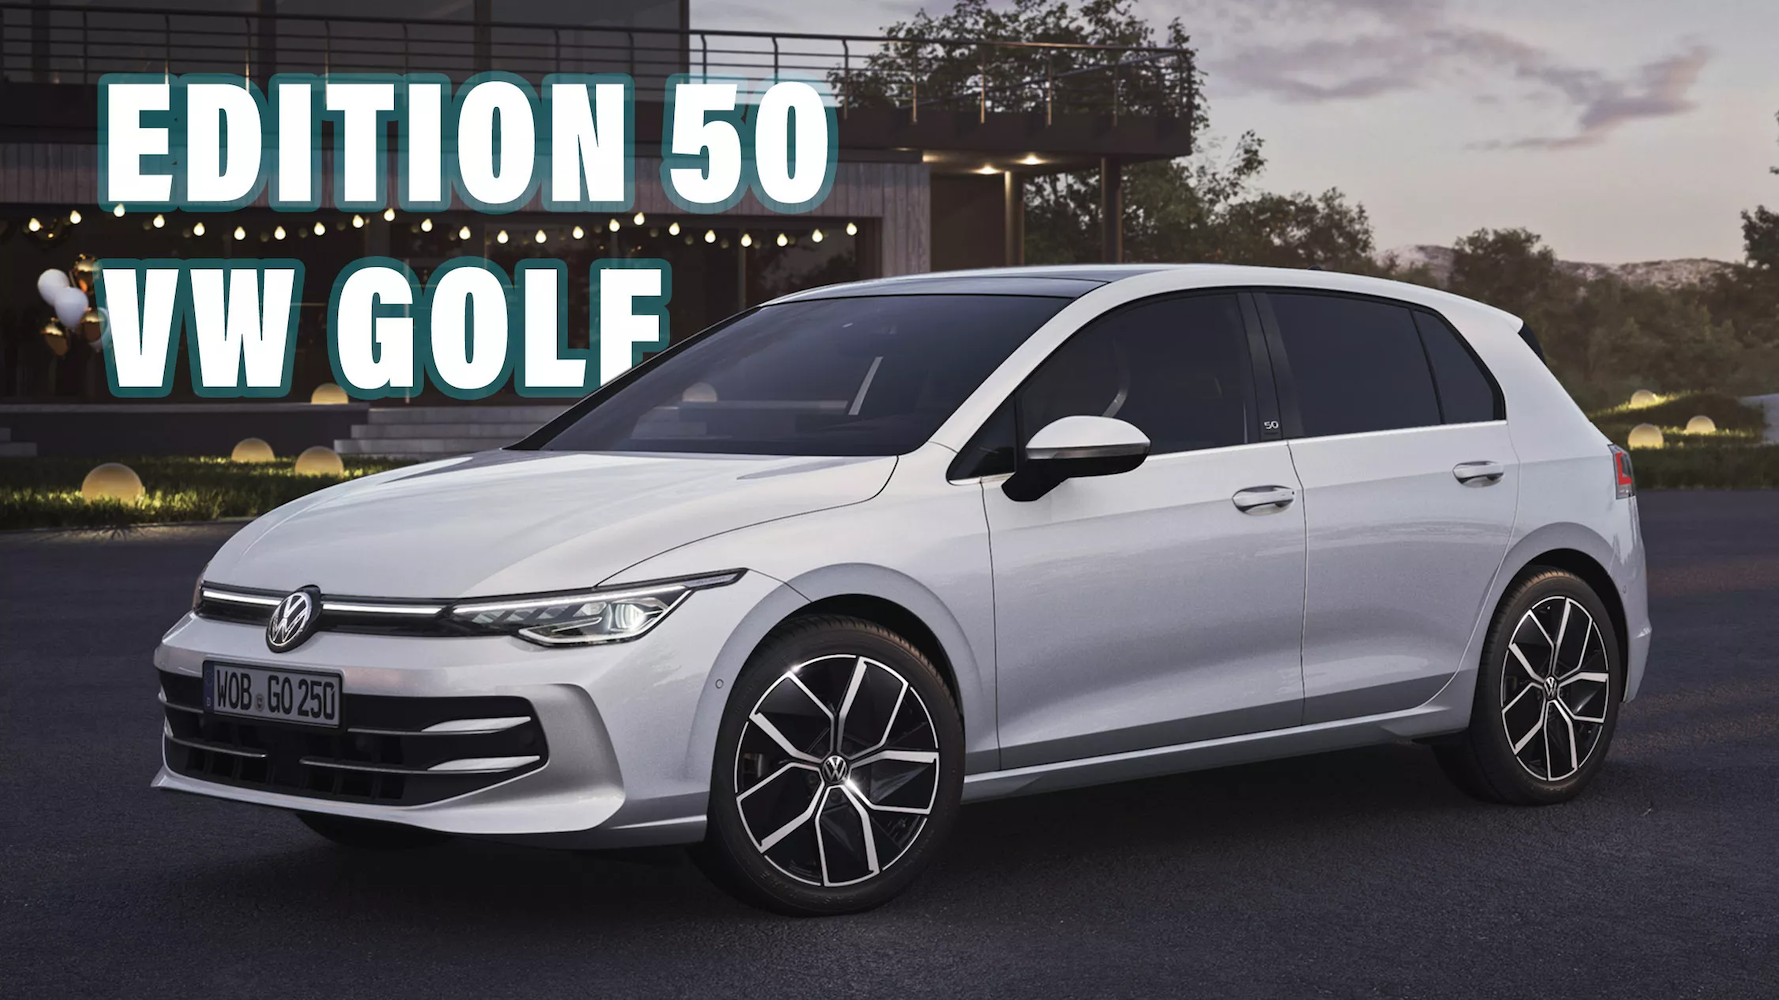 Volkswagen начал продавать новый Golf в Европе и выпустил юбилейную модель Edition 50